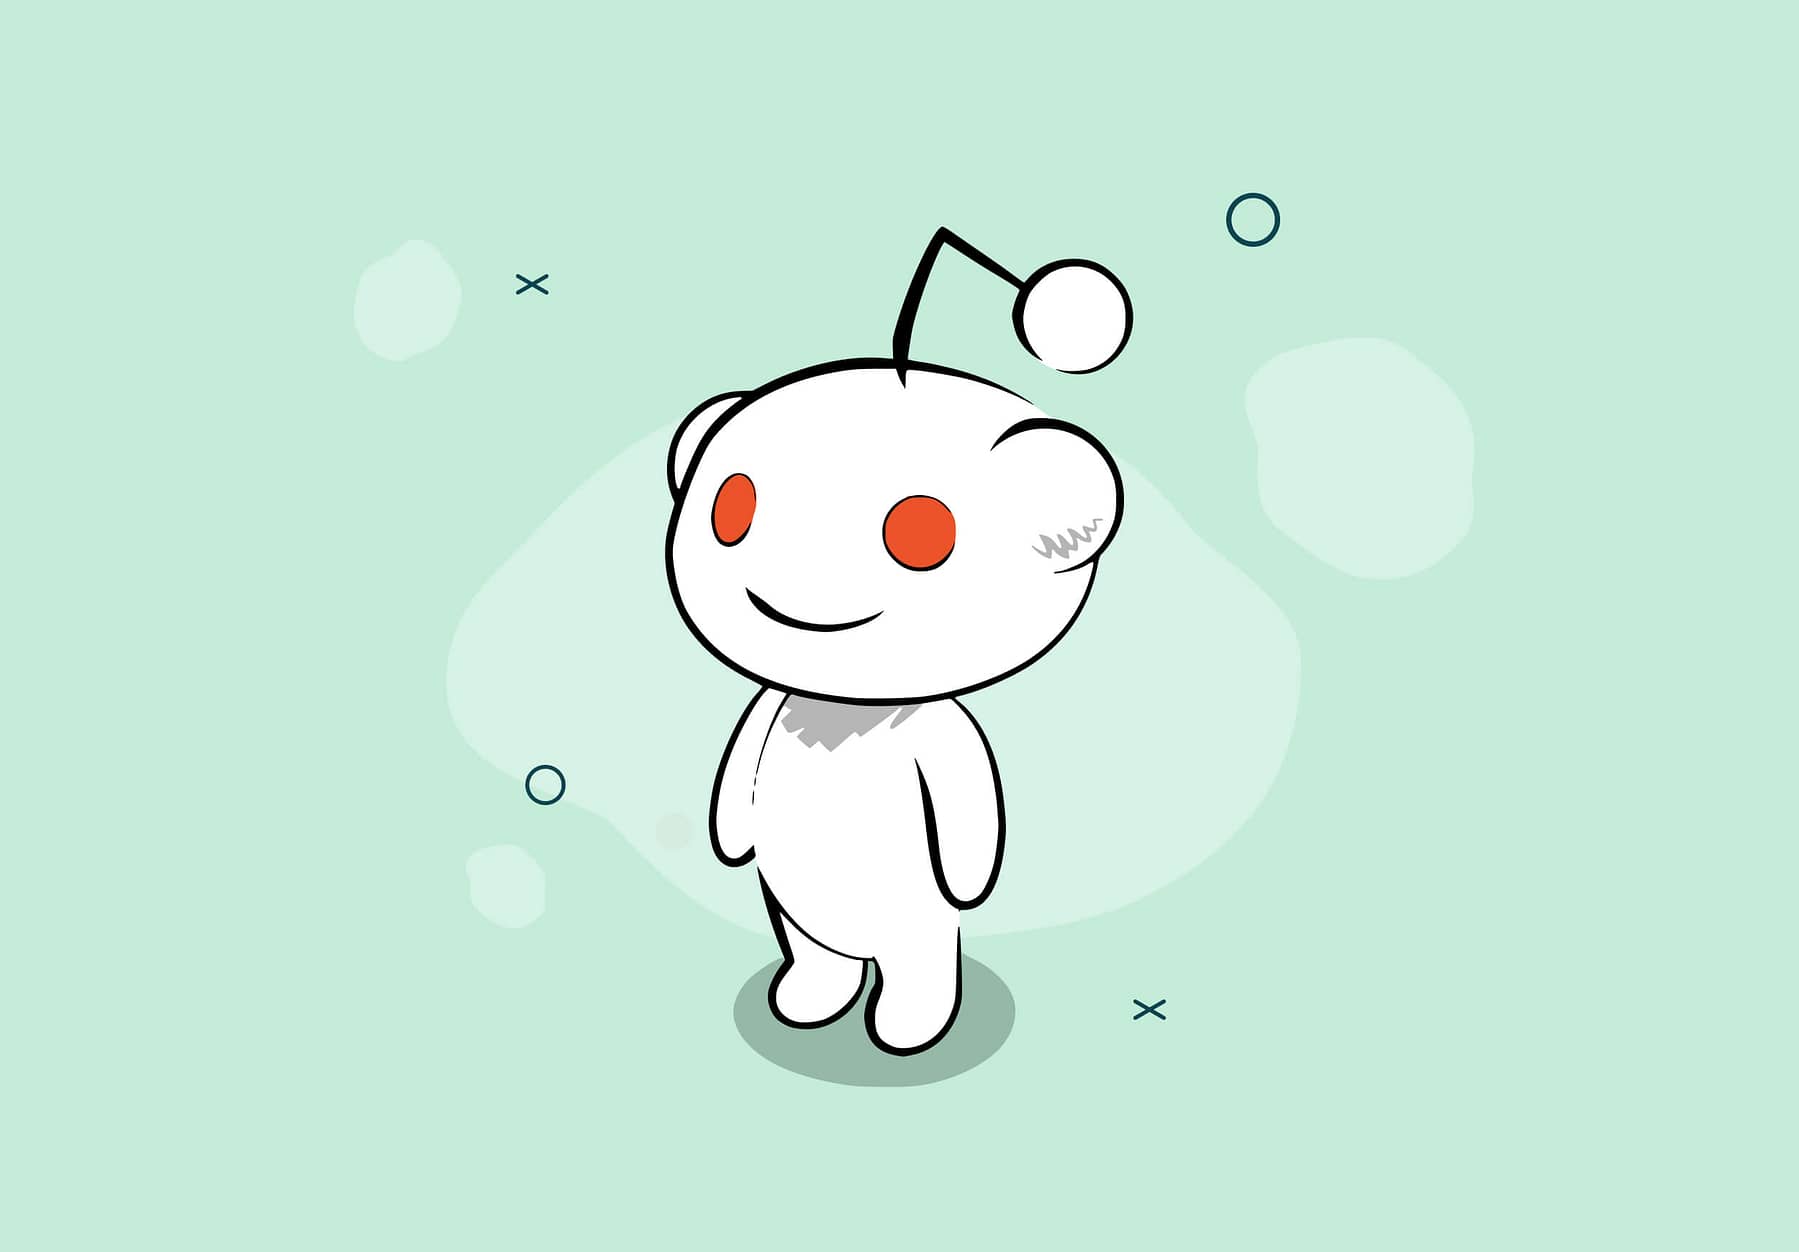 Reddit's mascot alien Snoo - Cover image by FoundrsHub